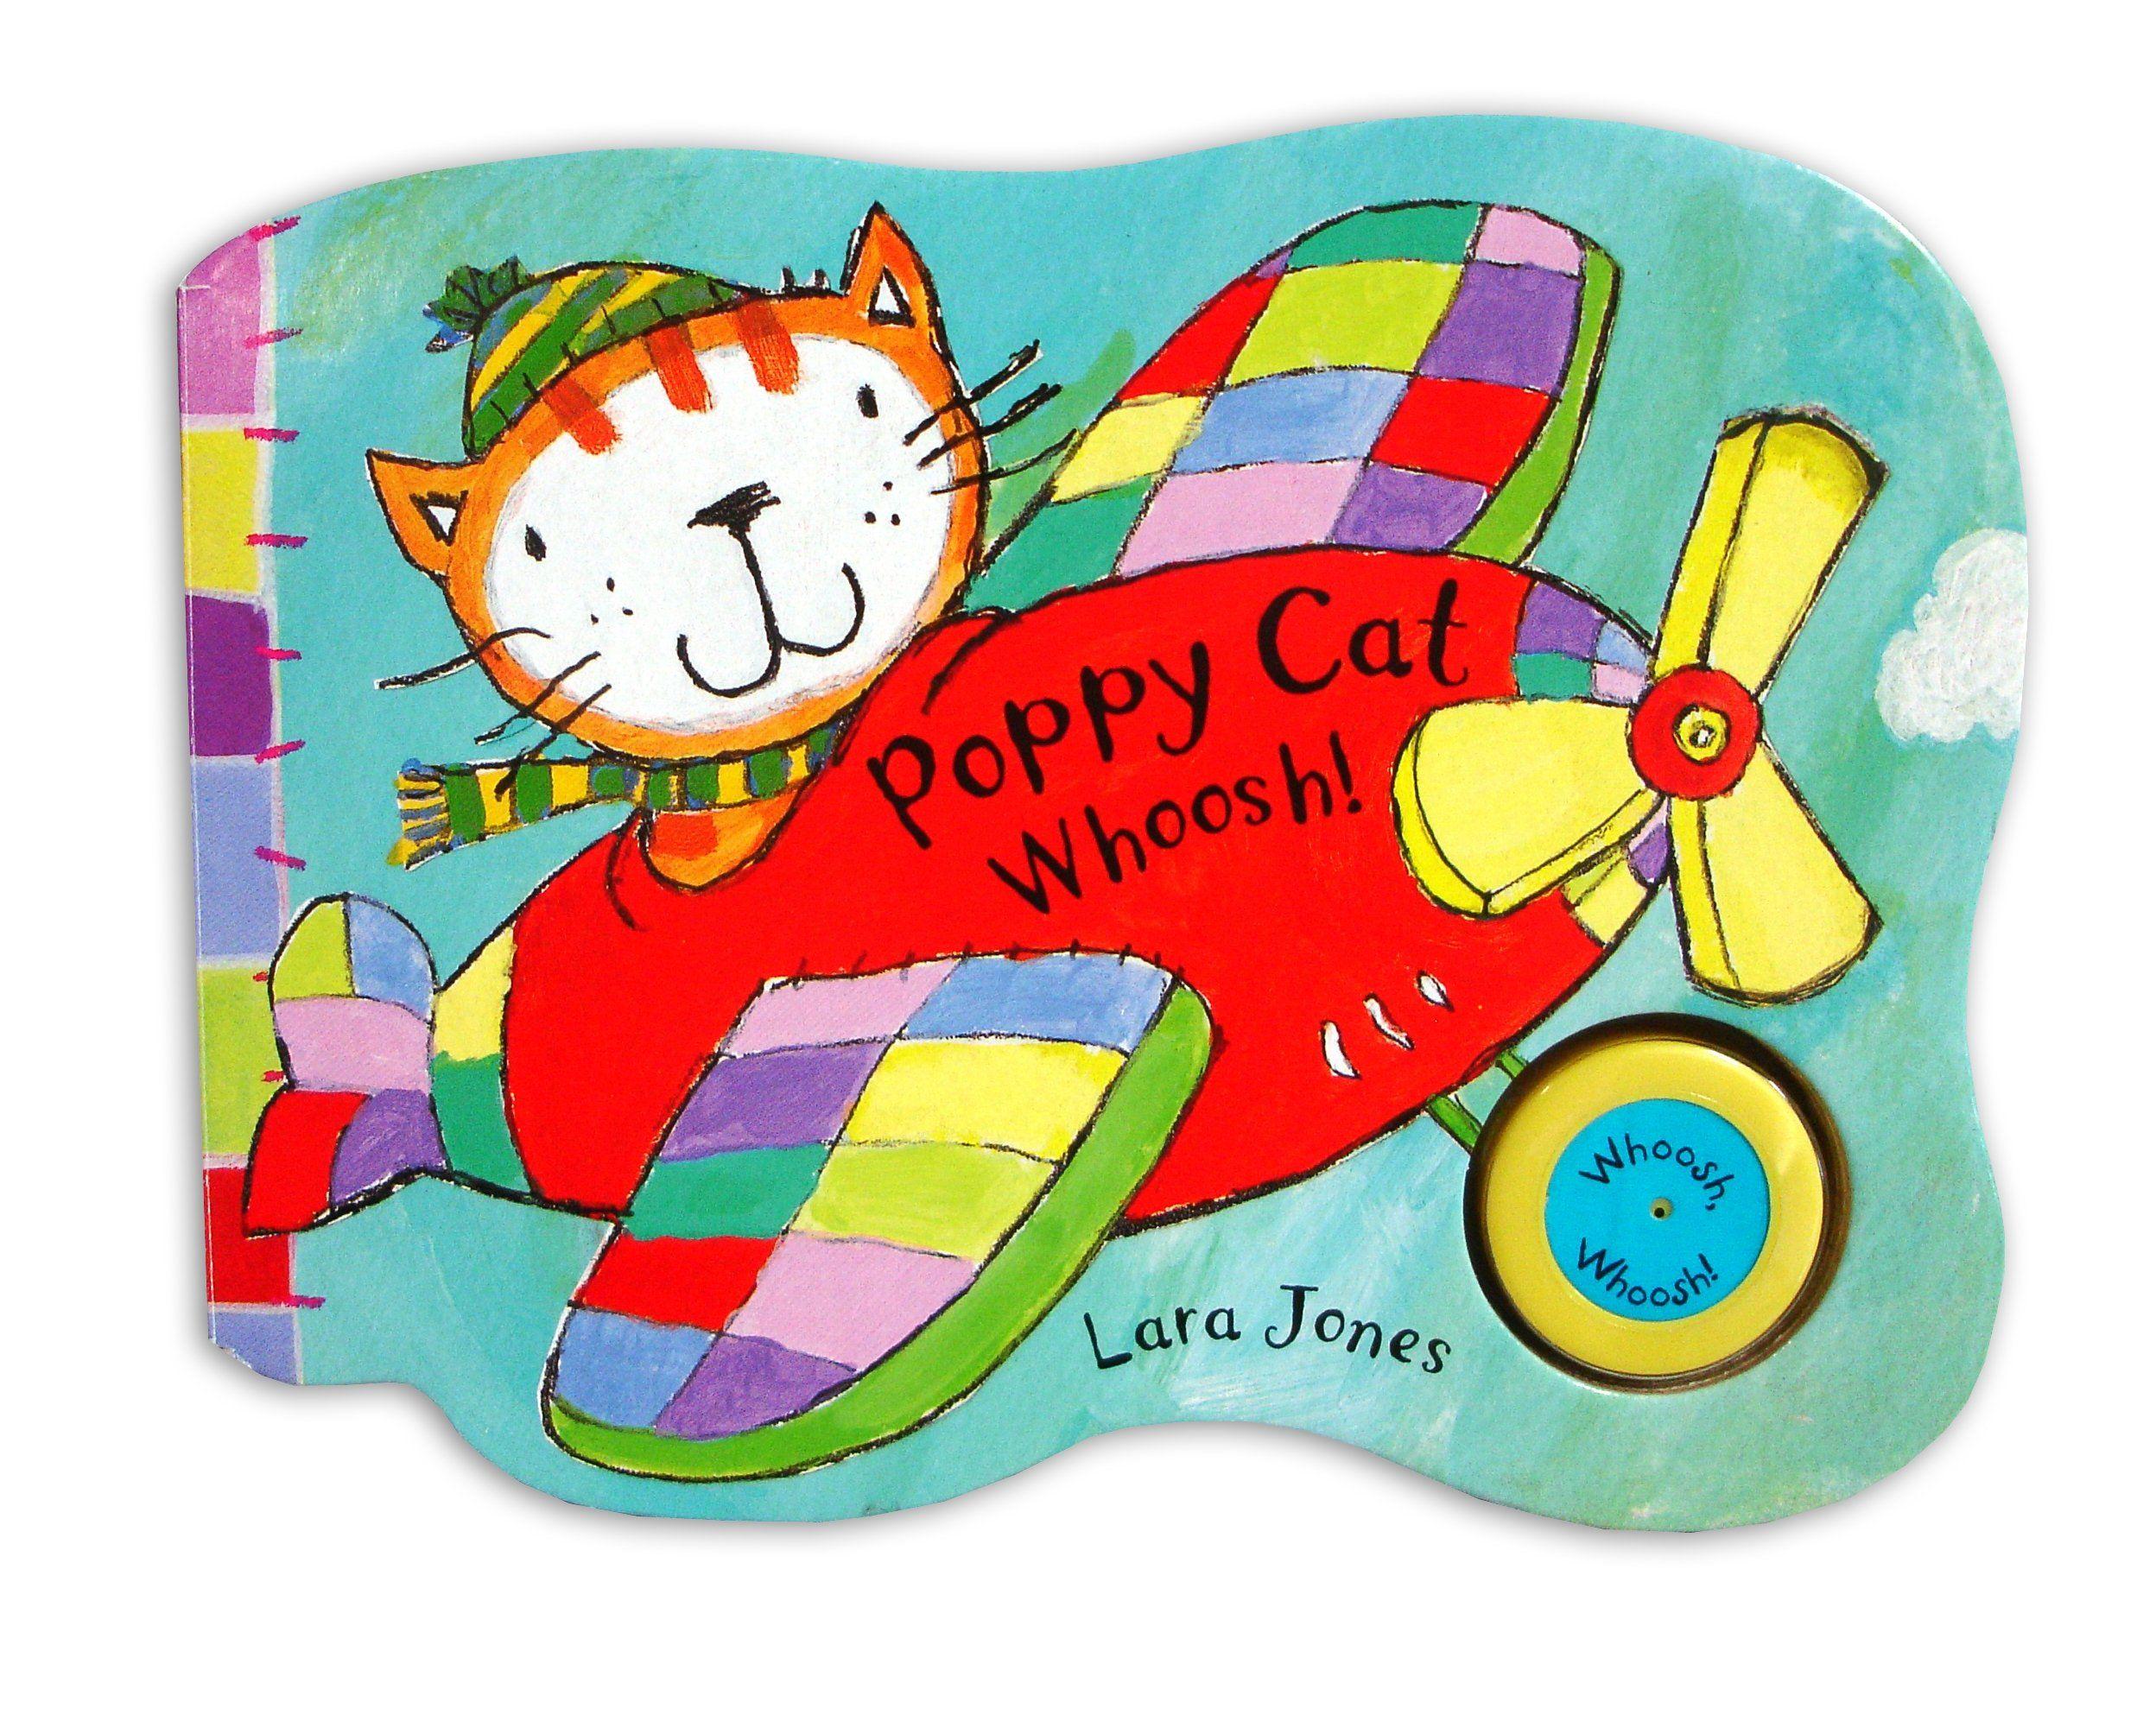 Poppy Cat Logo - Poppy Cat Noisy Books: Poppy Cat Whoosh!: Amazon.co.uk: Lara Jones